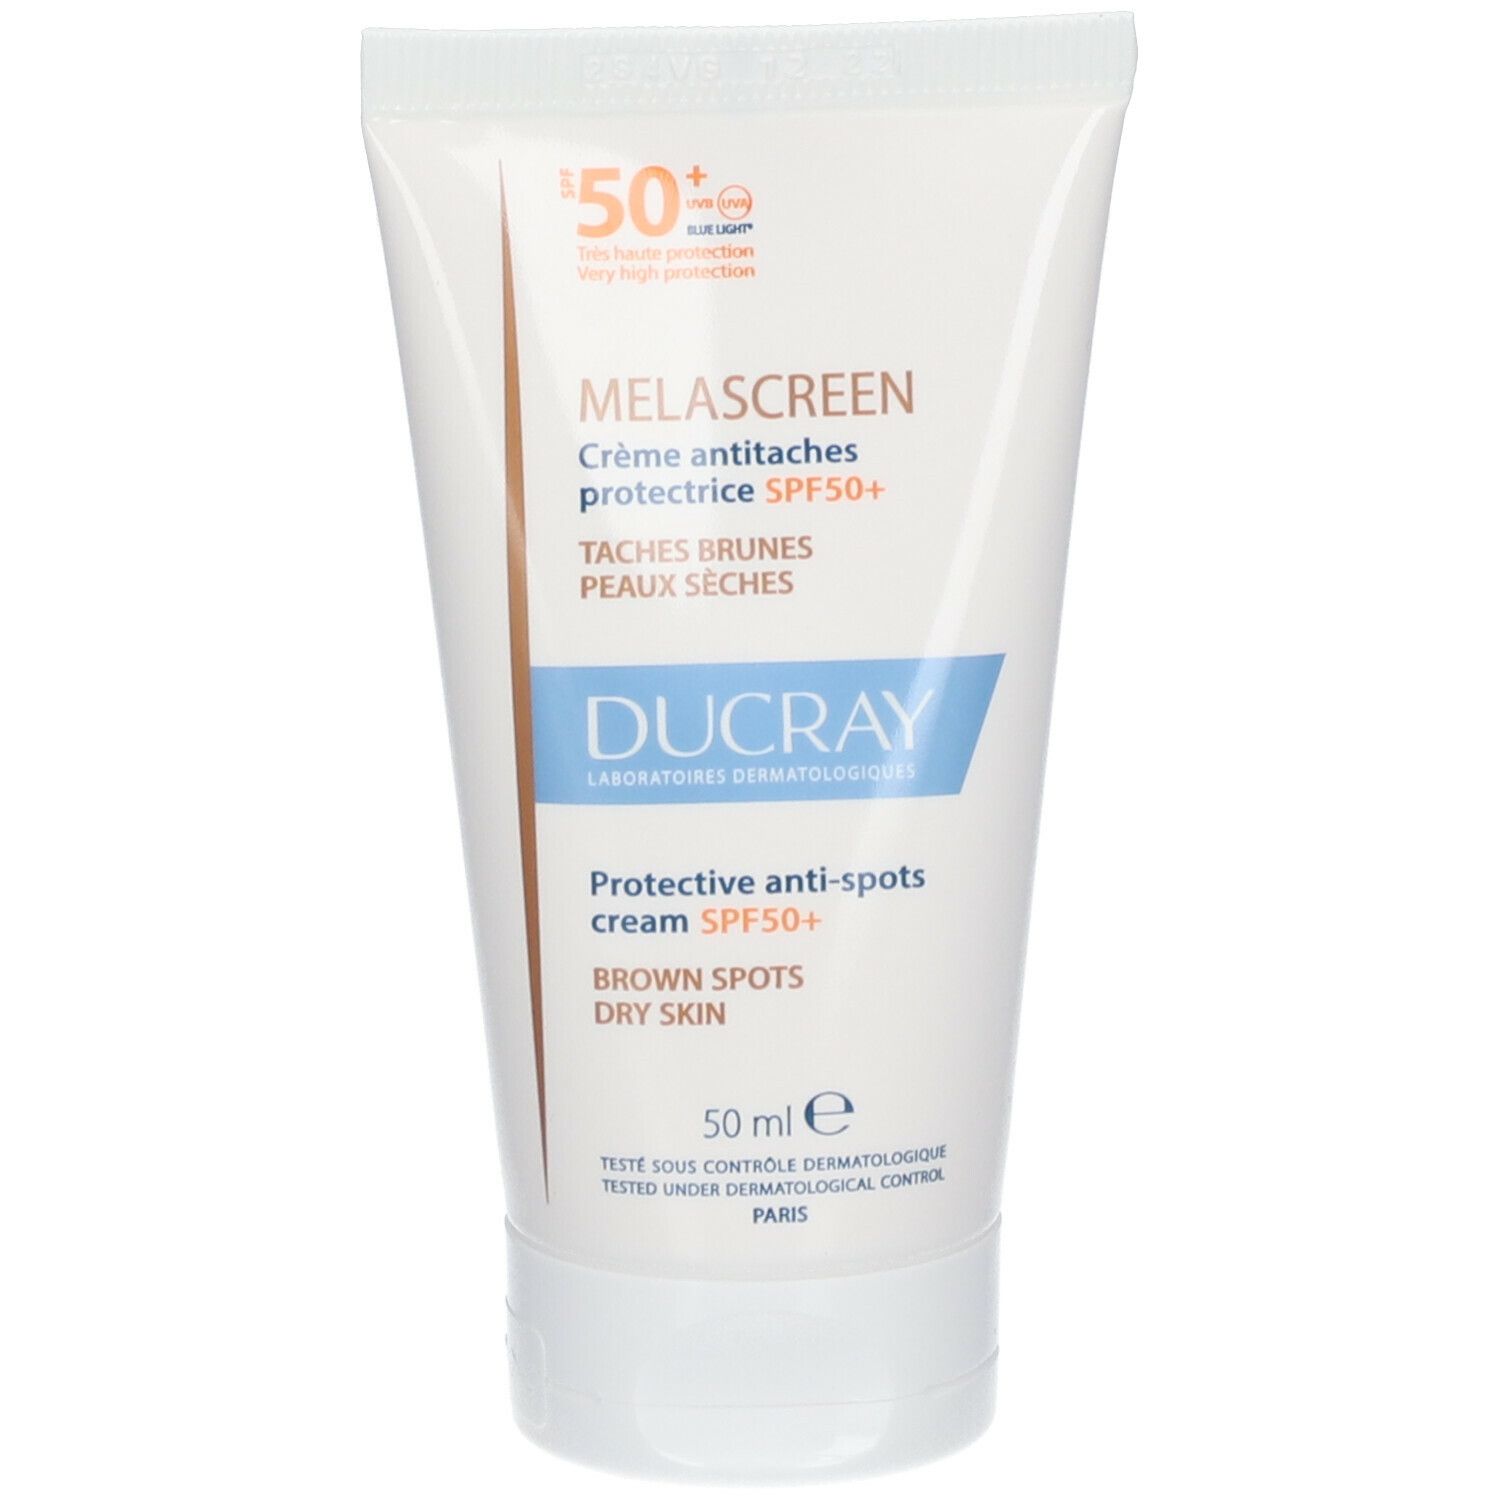 Ducray Melascreen UV Crème antitaches protectrice SPF 50+